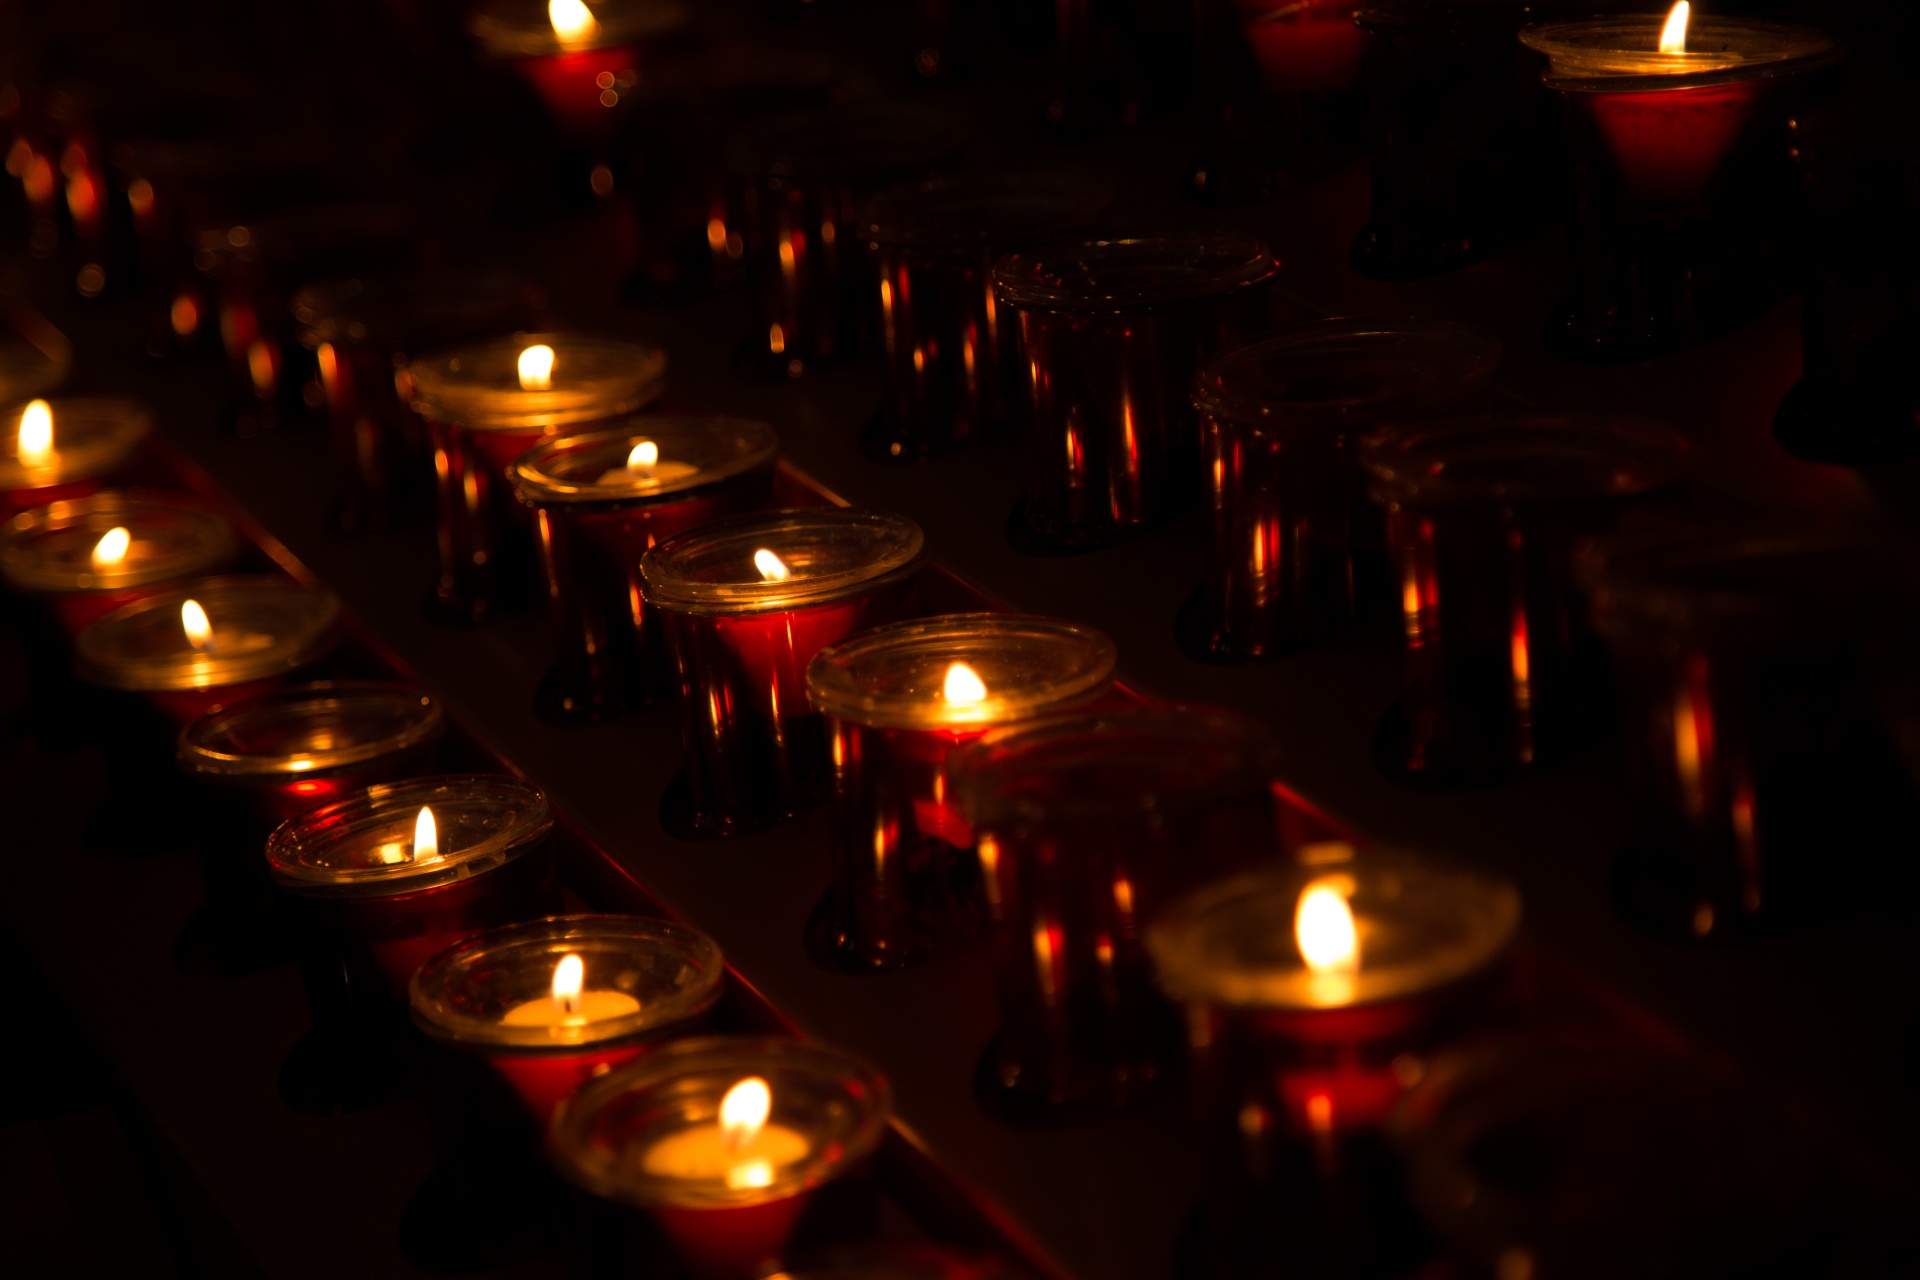 Church Candles